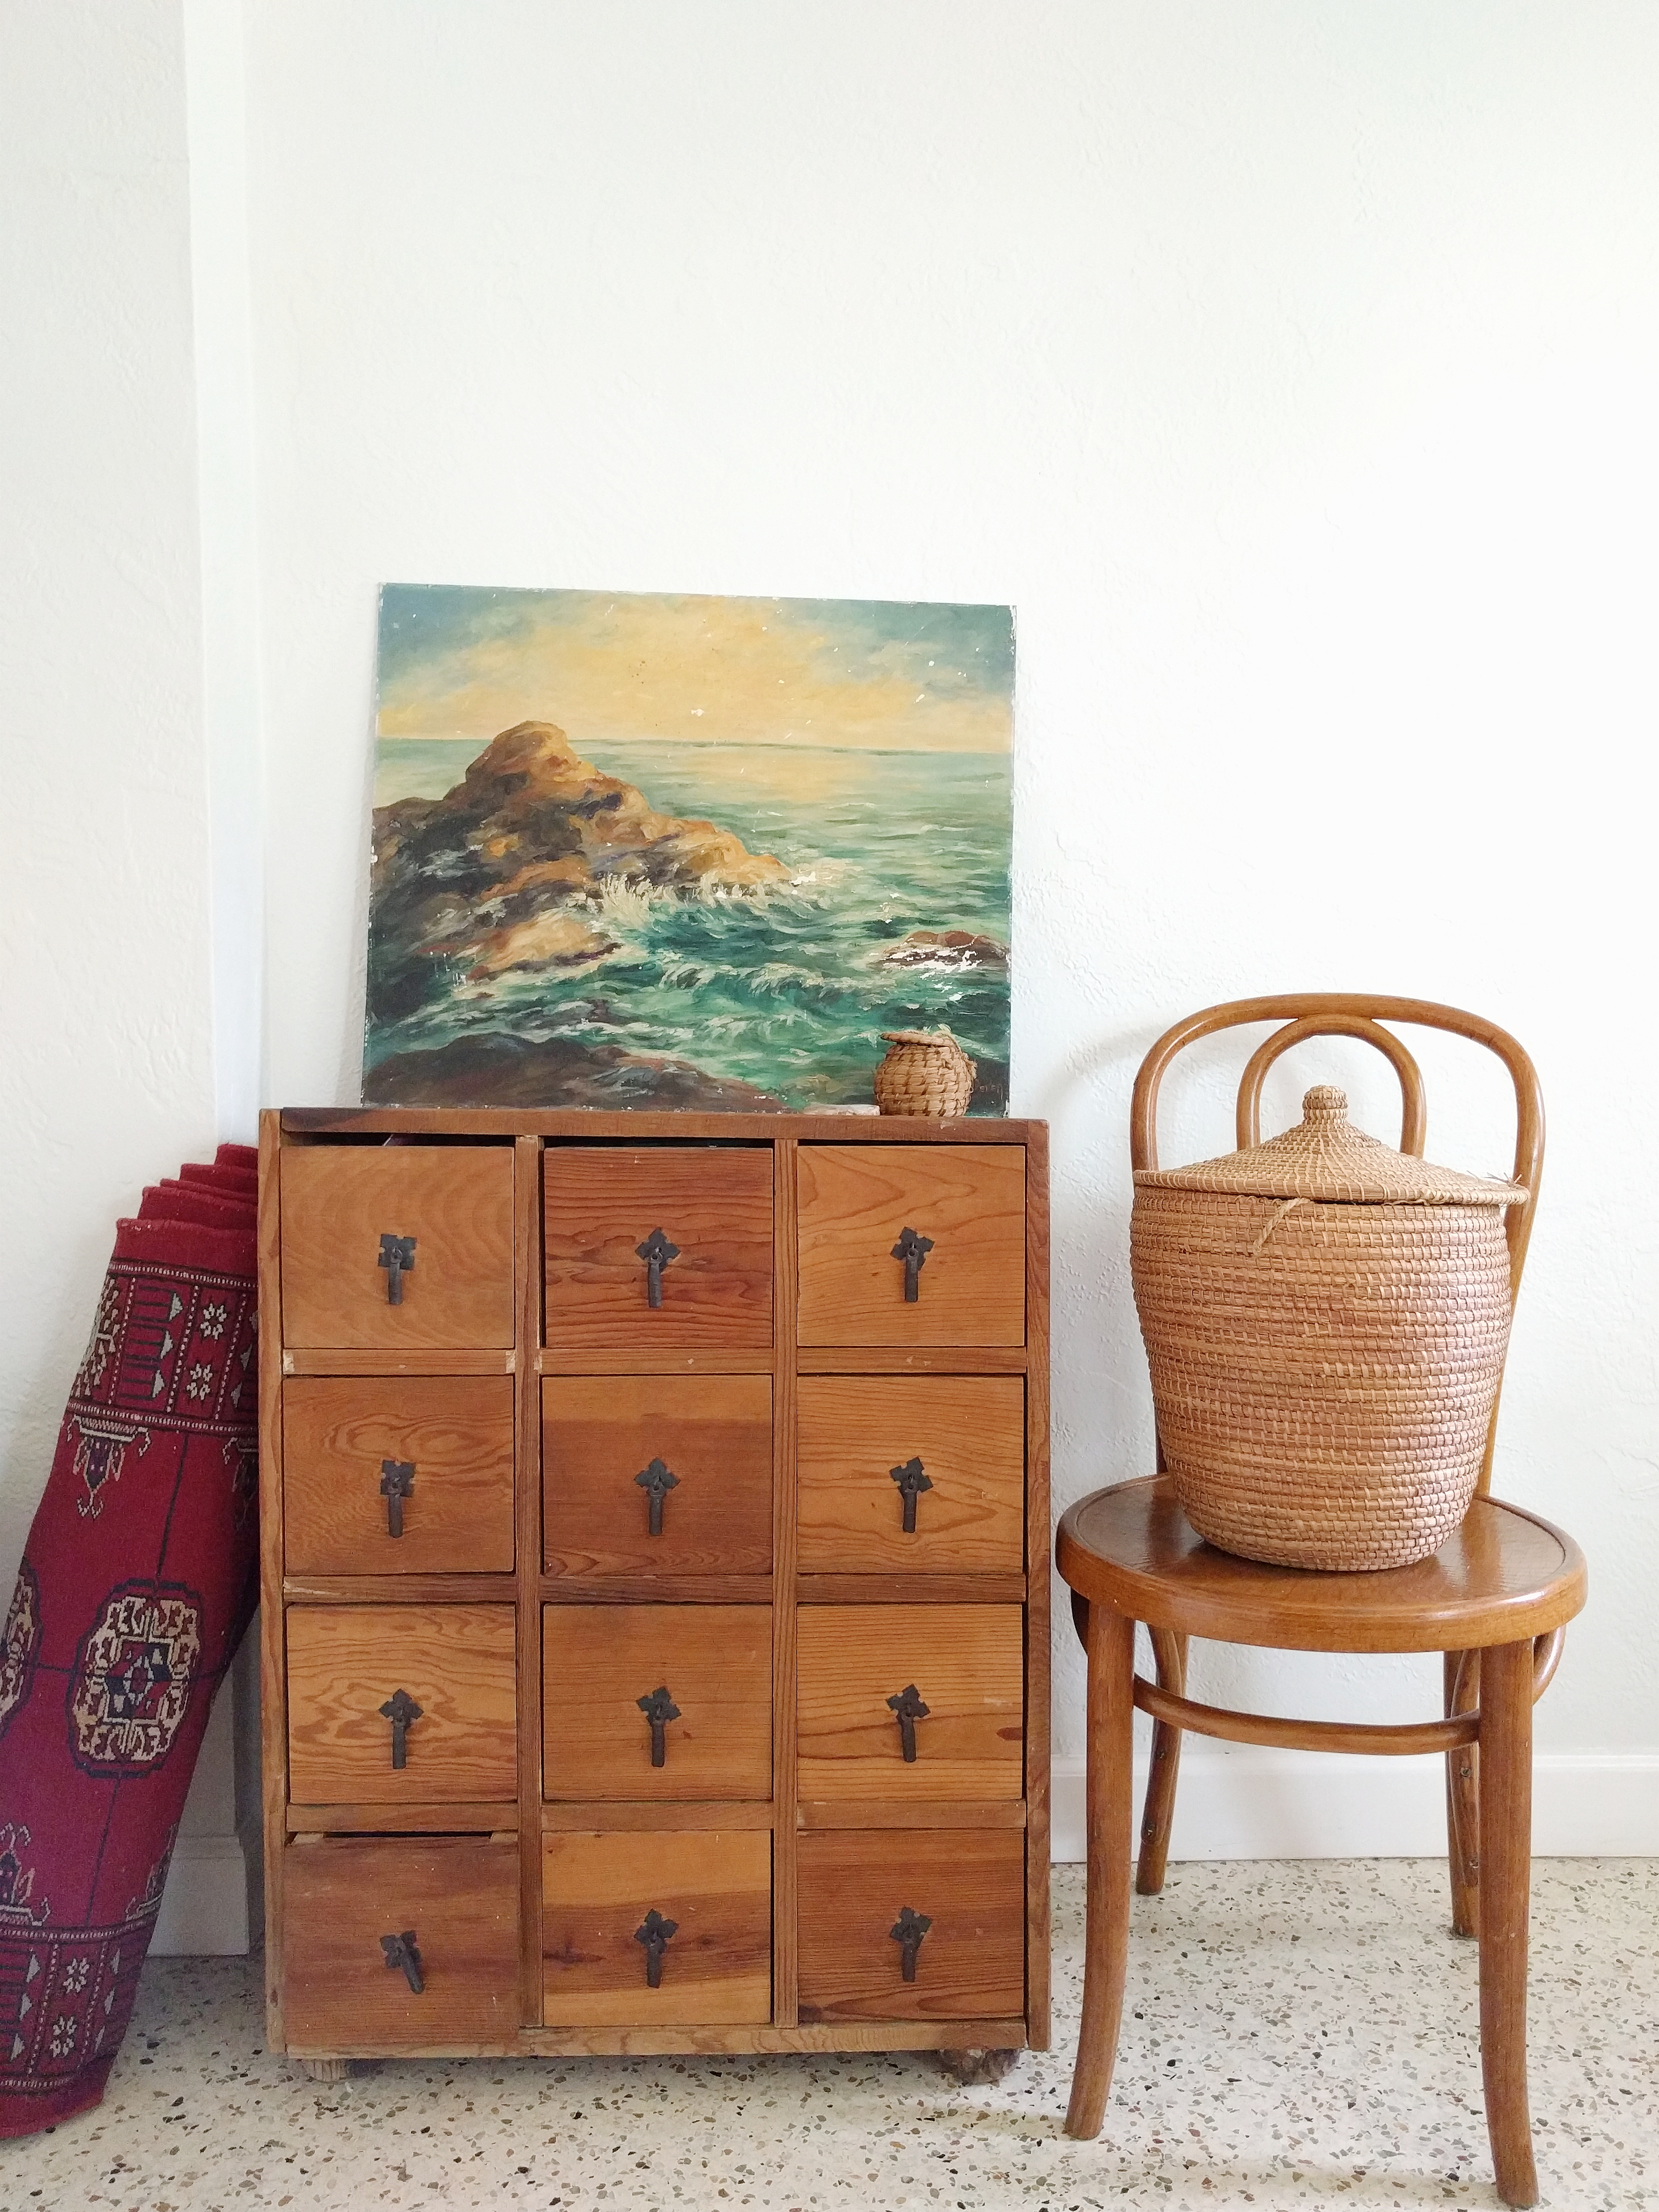 oil painting, persian rug, vintage basket